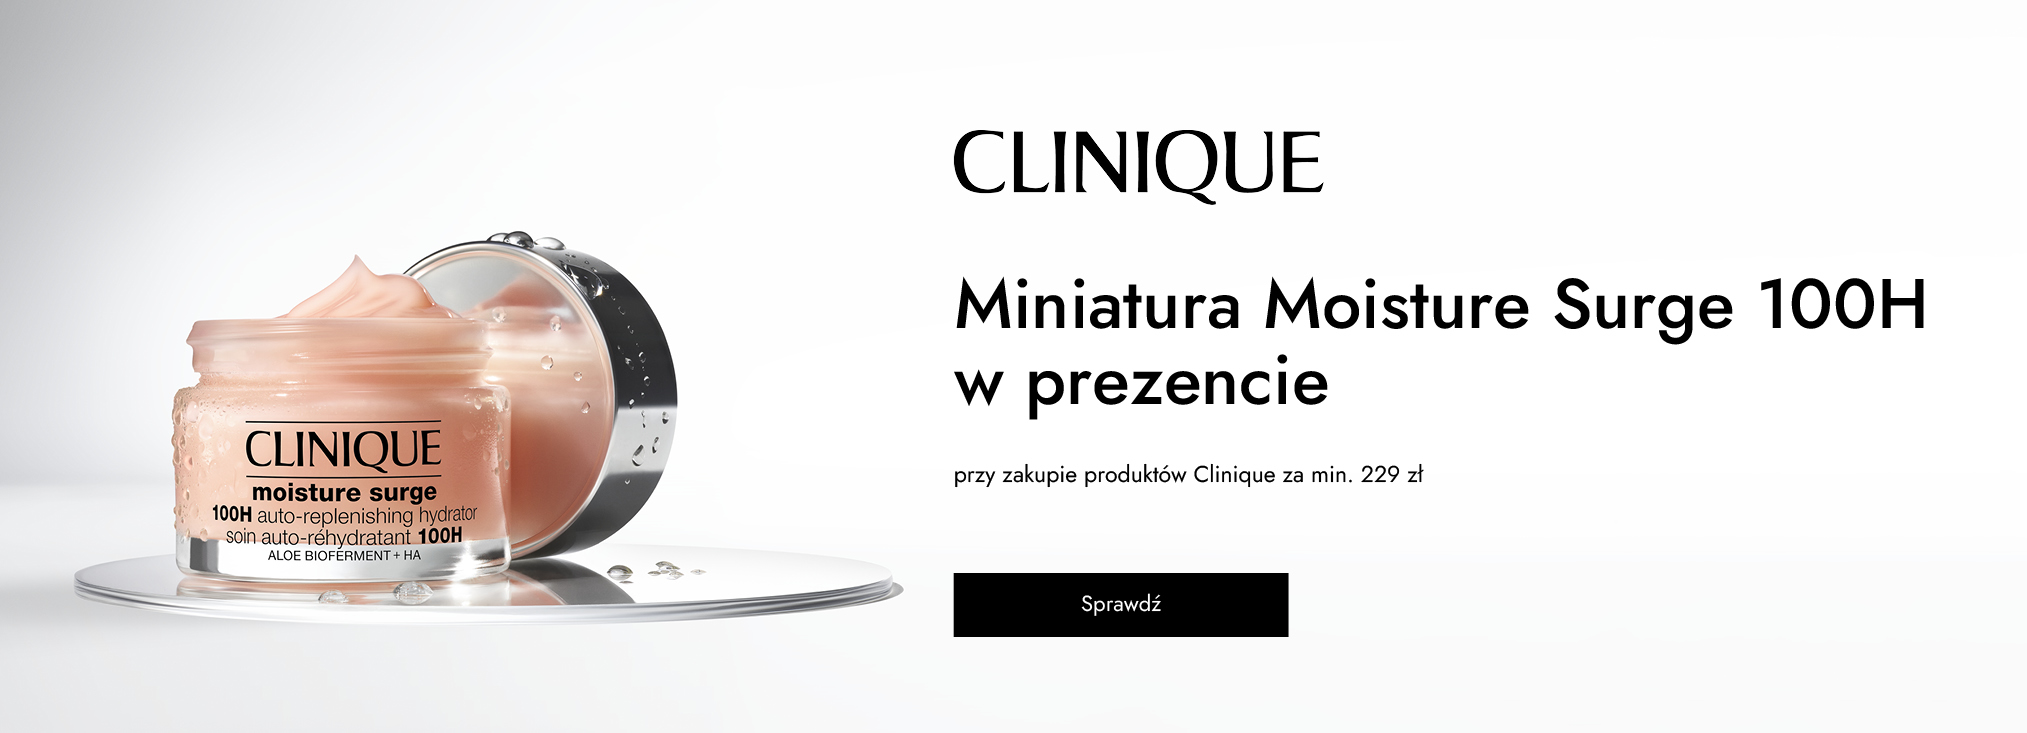 Clinique_face